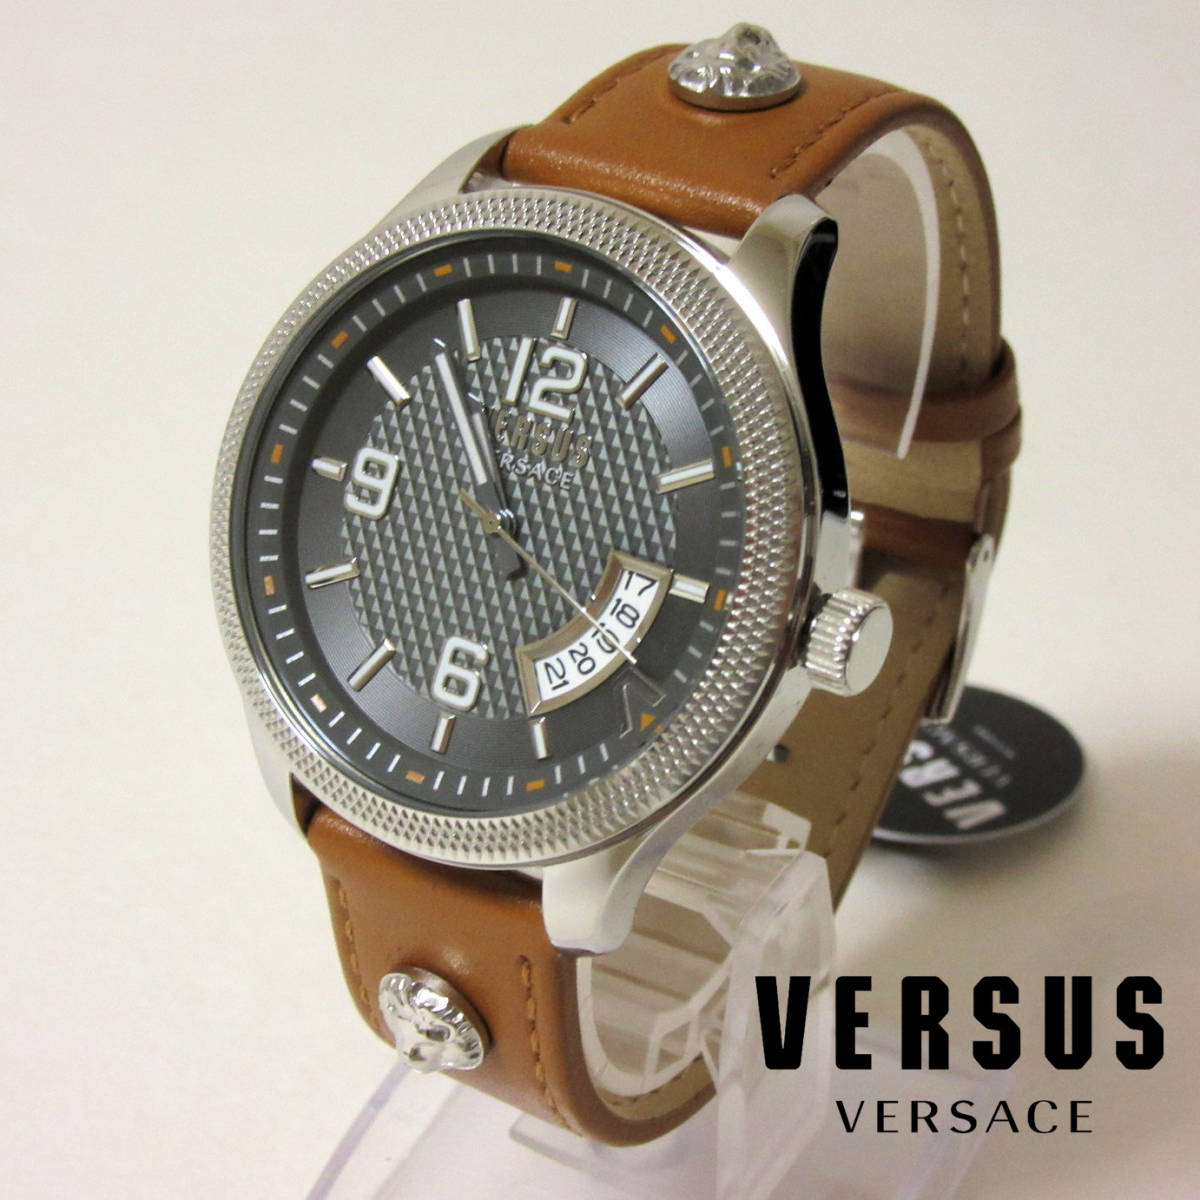 新品箱入 VERSUS VERSACE ヴェルサス ヴェルサーチ 3針 デイト ギョーシェ メンズ 腕時計 ウォッチ ハンドメイドレザーベルト 茶 44mm, ブランド腕時計, あ行, ヴェルサーチ